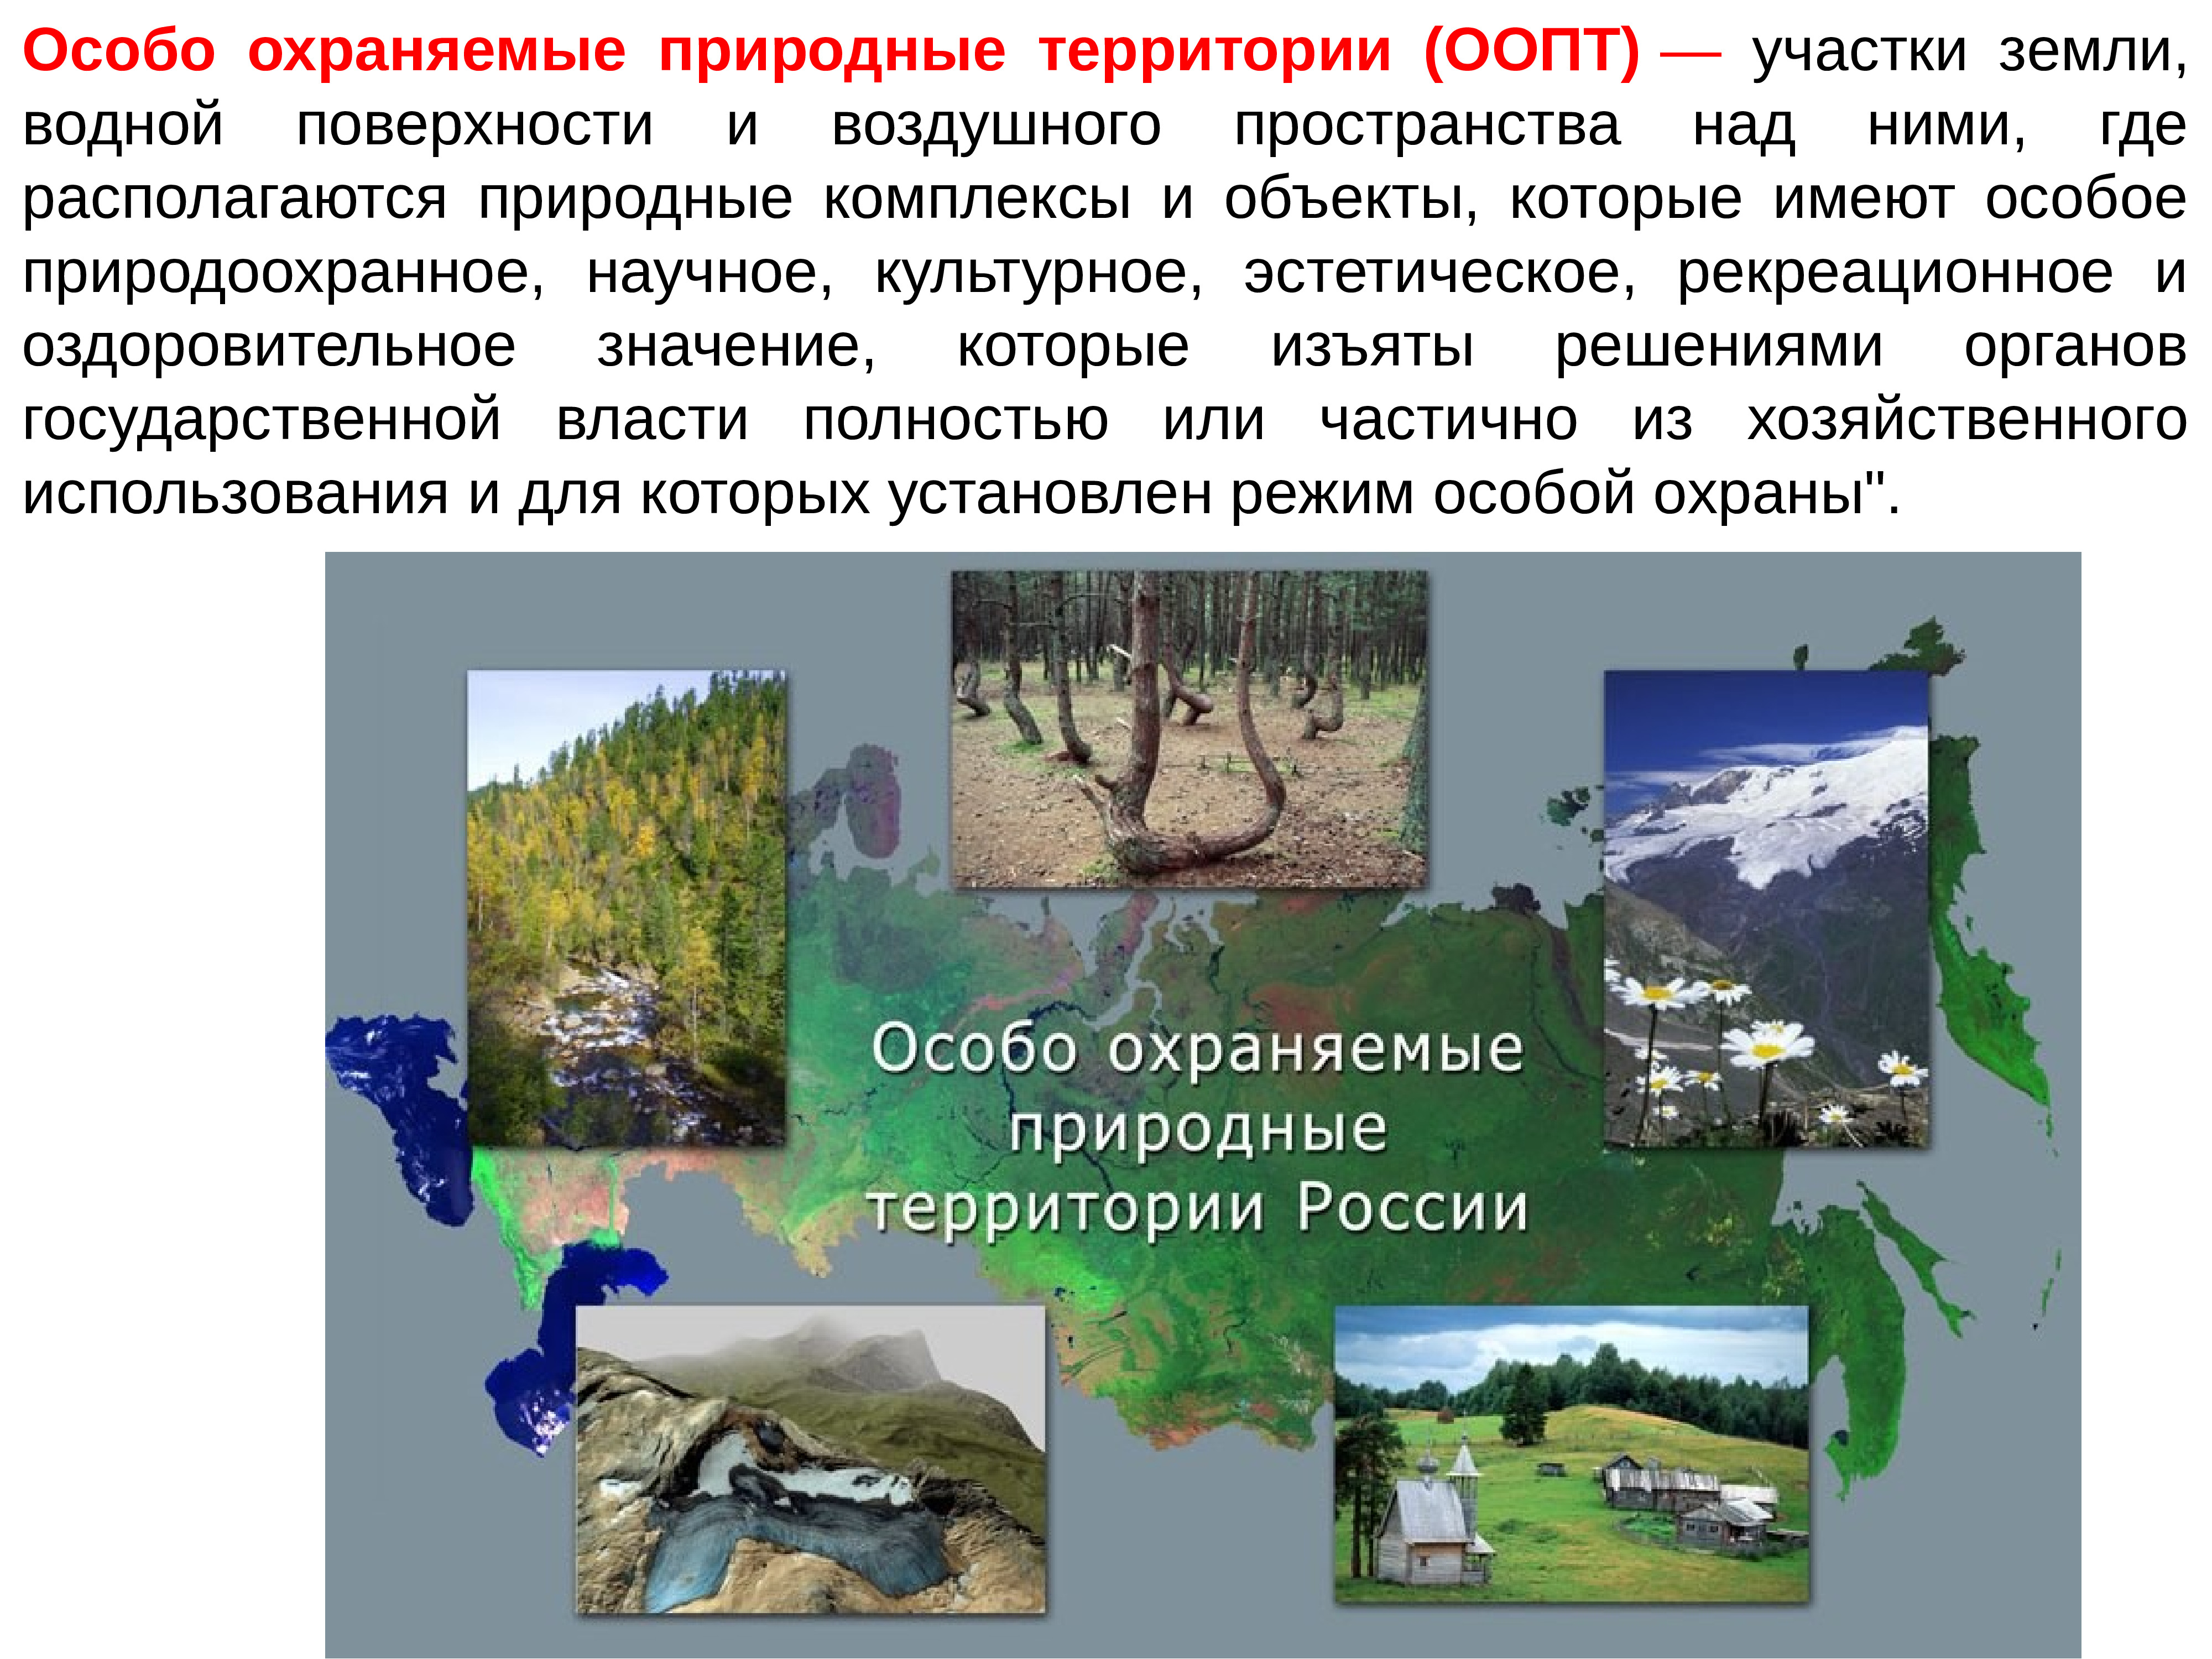 Любой вид особо охраняемых природных территорий. Особо охраняемые природные территории. Особоозраняемые природные территории. Особорхраняемые природные территории. Особо охраняемые природные территории России.